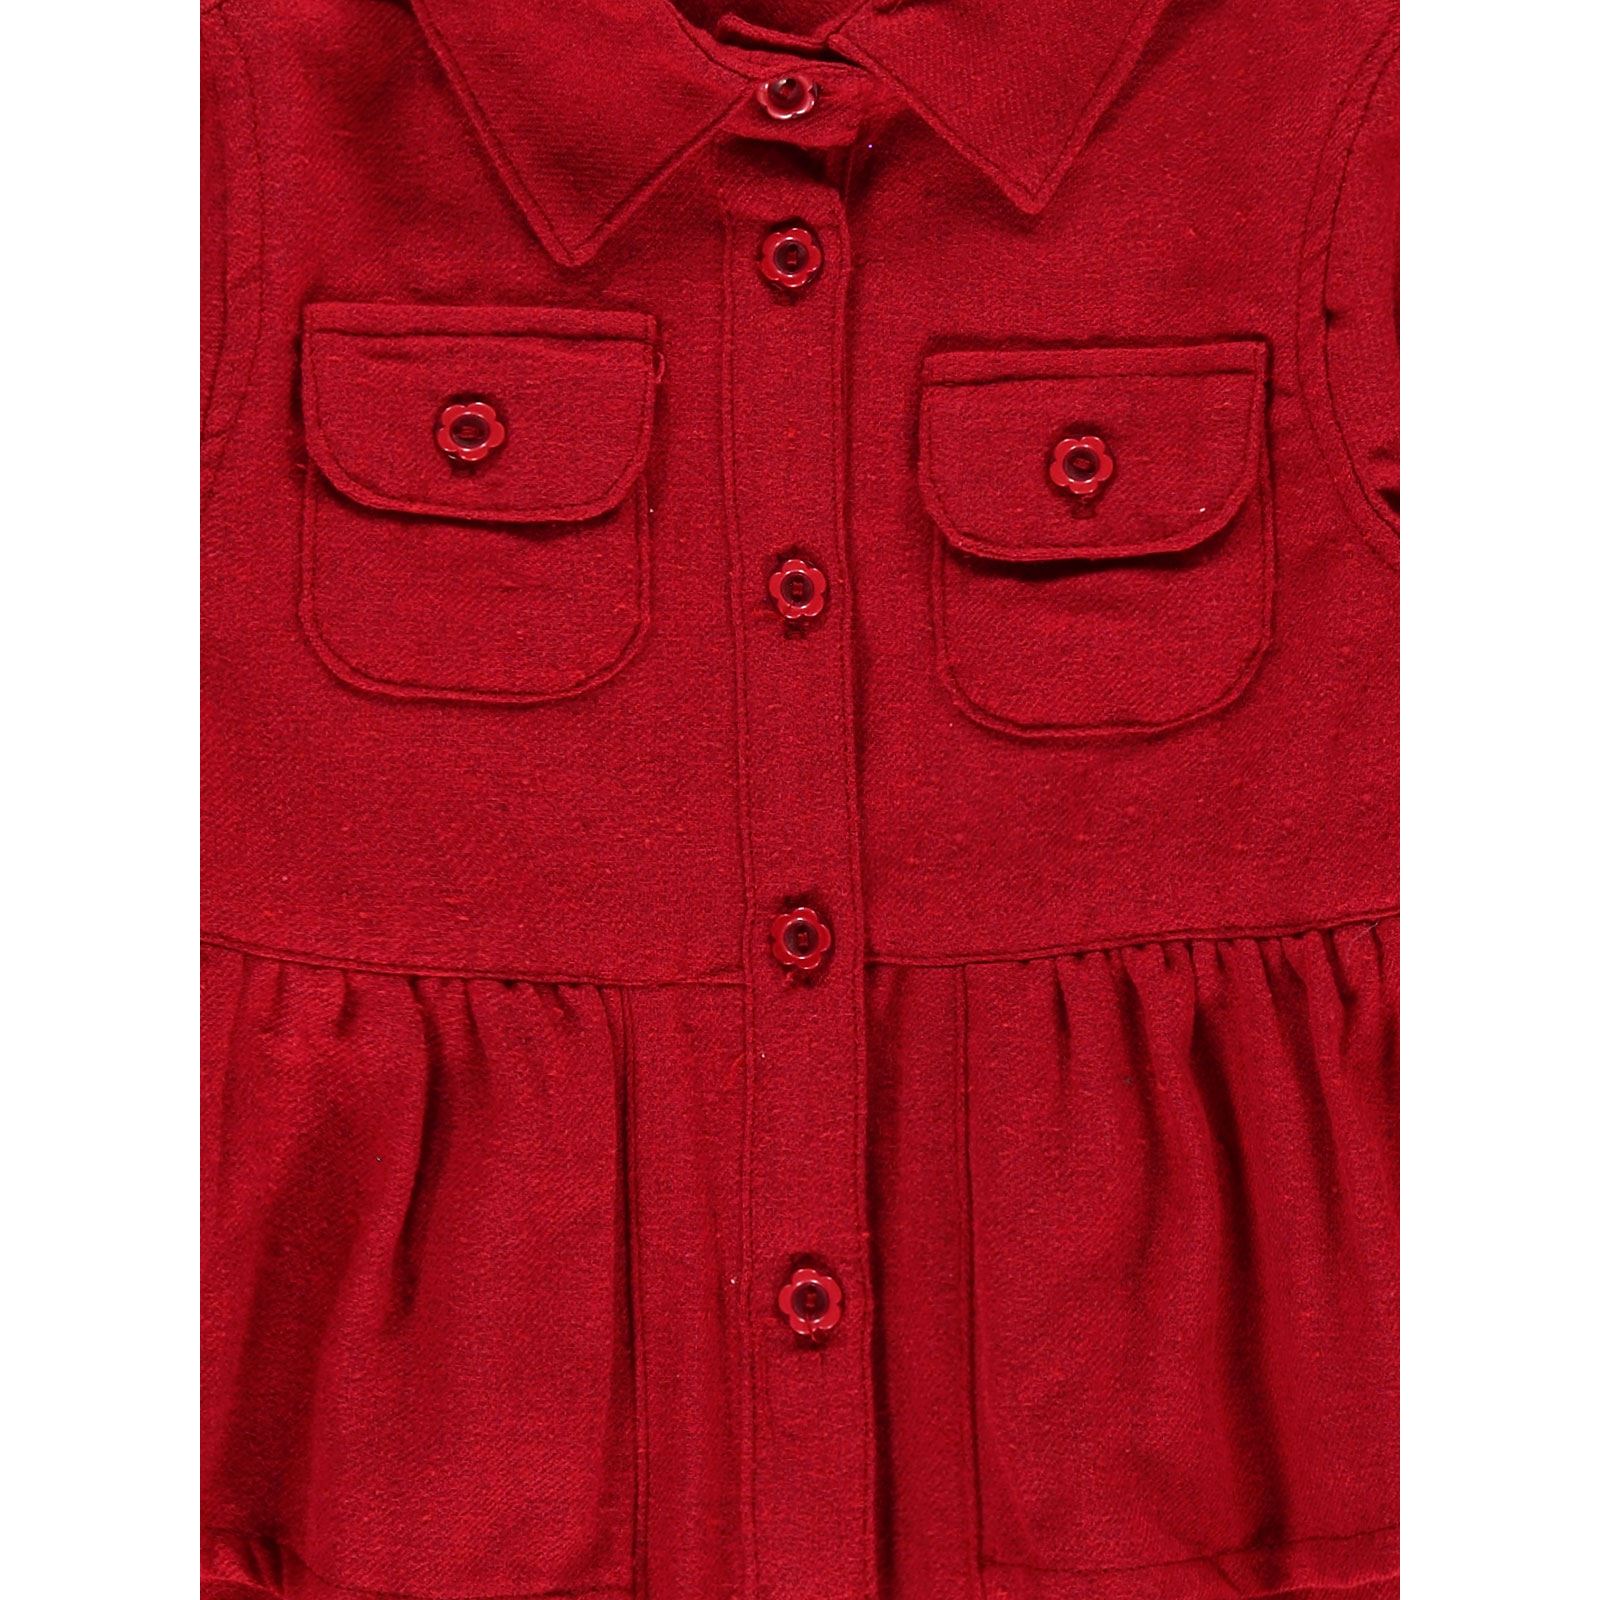 Civil Girls Kız Çocuk Fırfırlı Elbise 2-5 Yaş Kırmızı